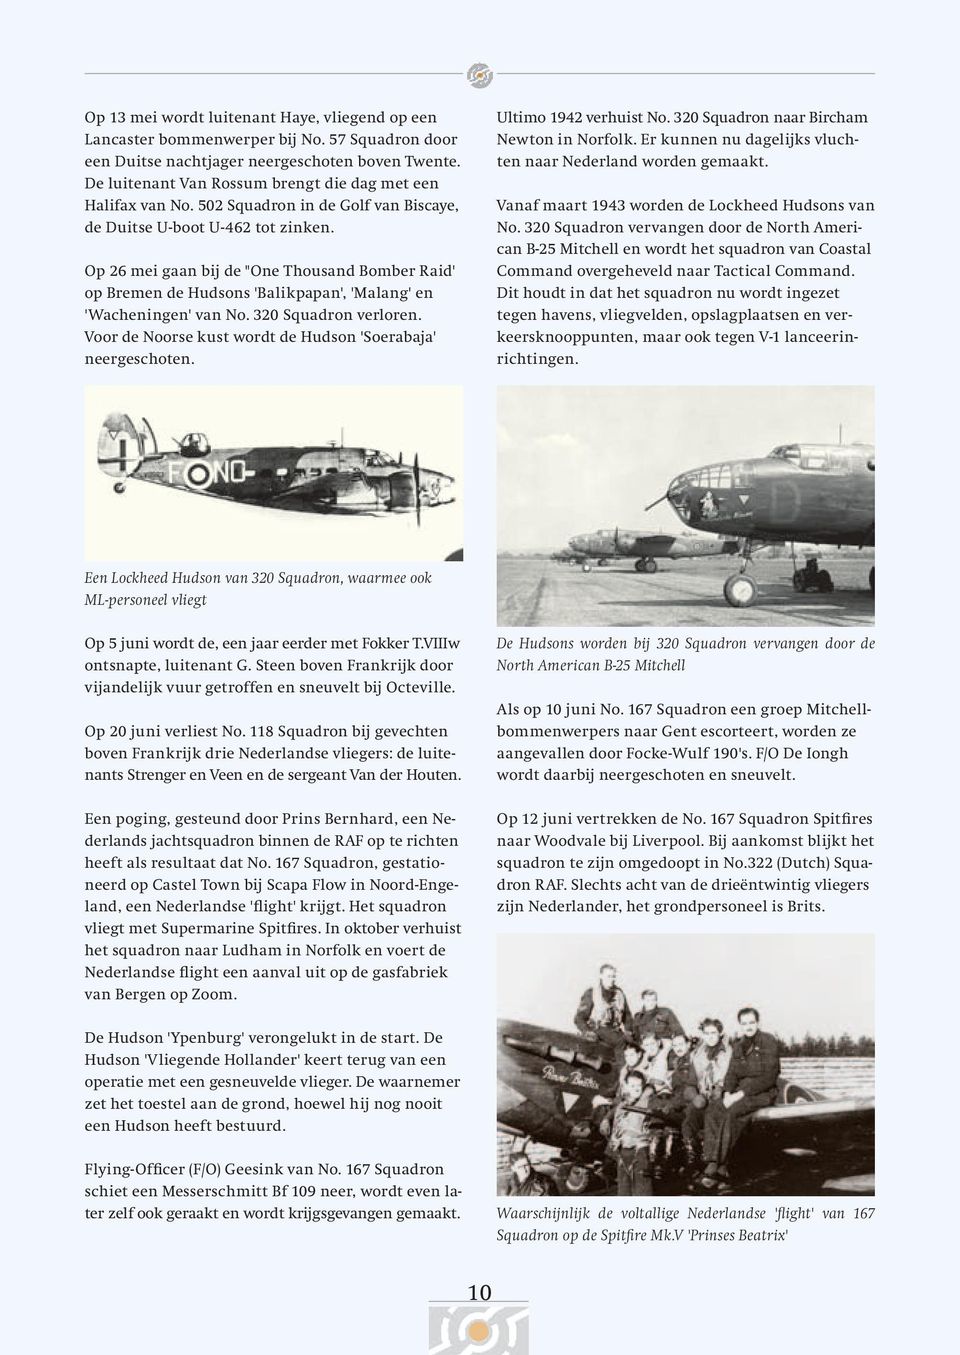 Op 26 mei gaan bij de "One Thousand Bomber Raid' op Bremen de Hudsons 'Balikpapan', 'Malang' en 'Wacheningen' van No. 320 Squadron verloren.